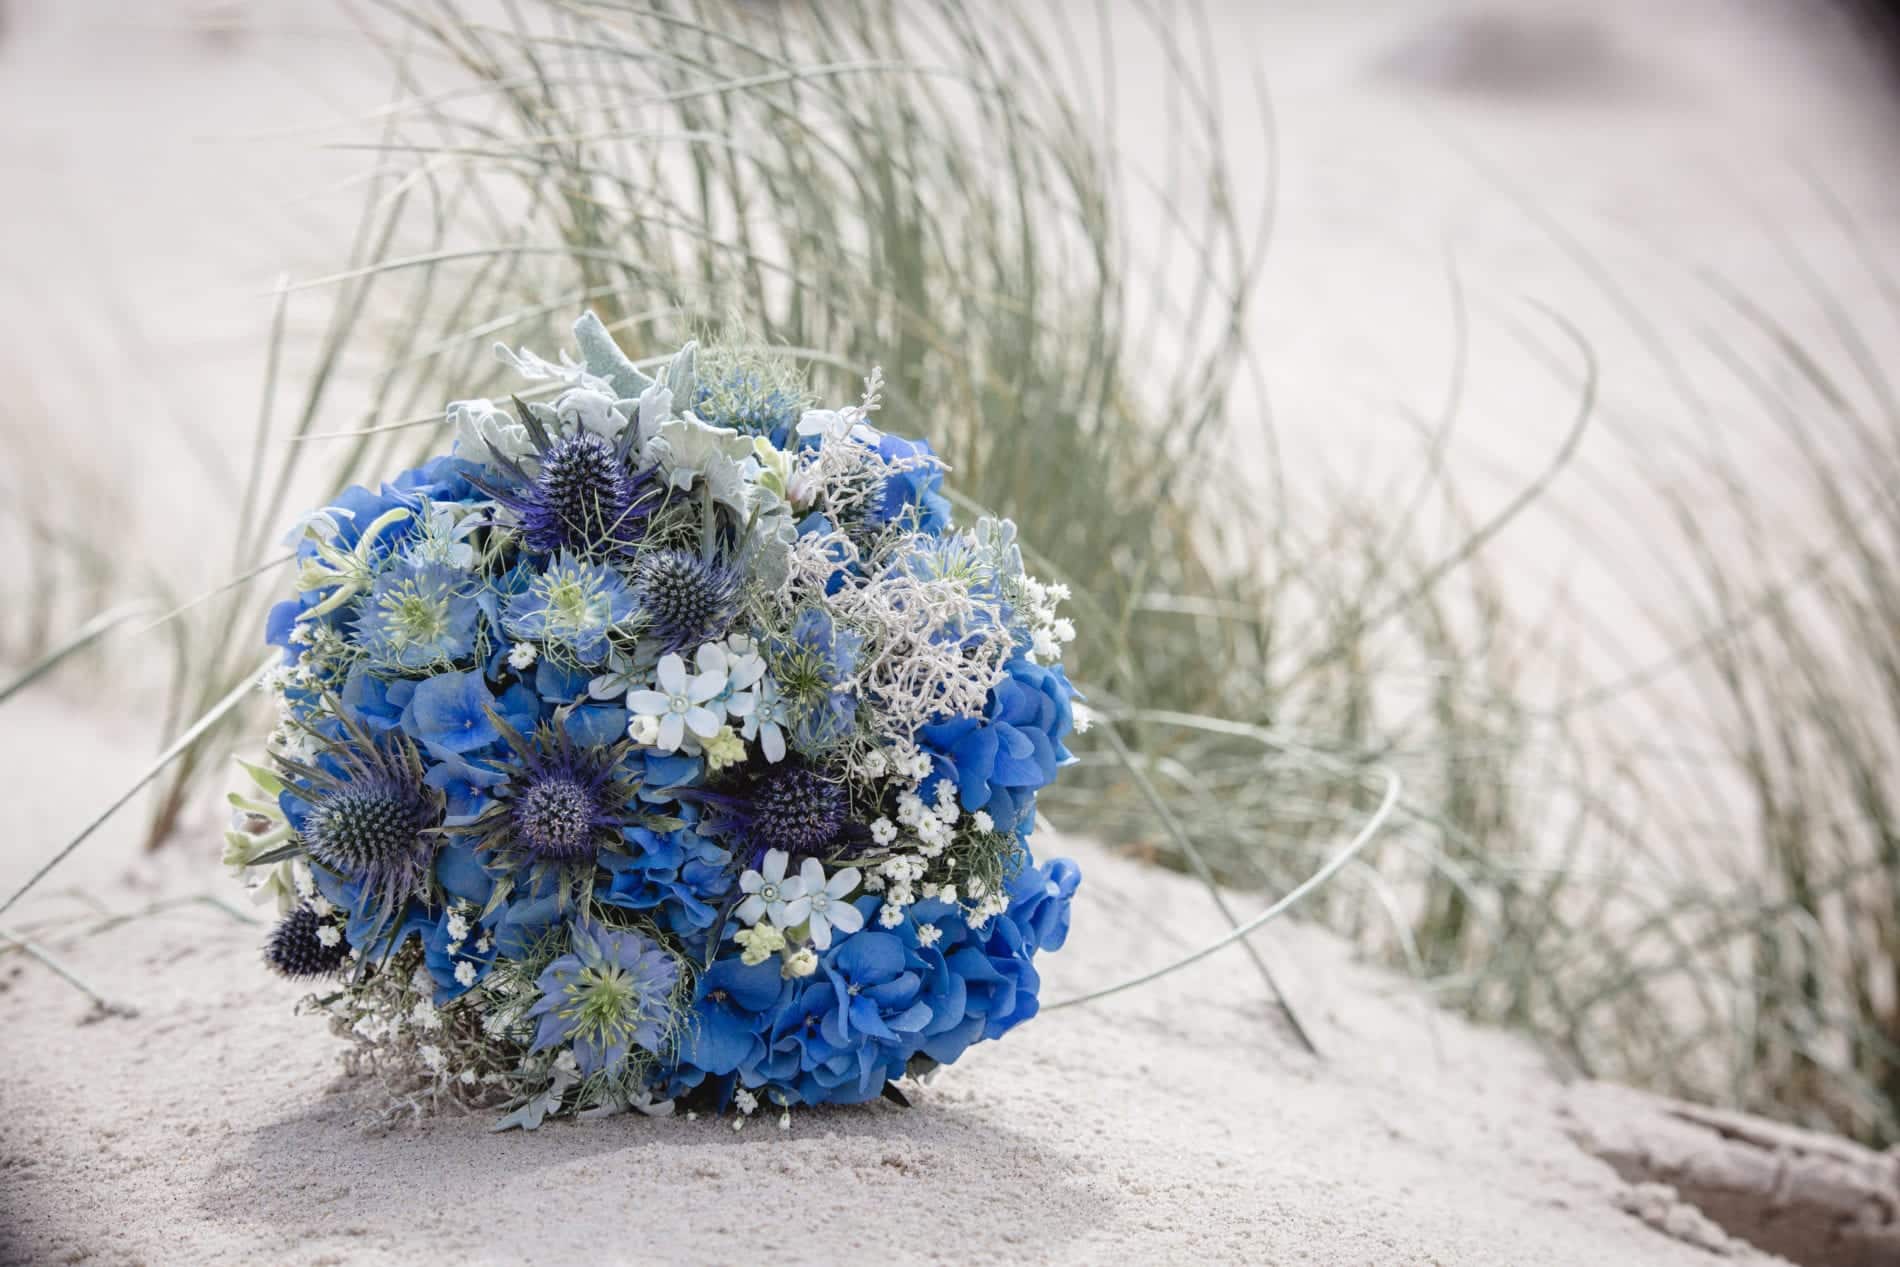 Hochzeitsblumen - Brautstrauß in Blau mit Hortensien, Edeldisteln und Schleiderkraut